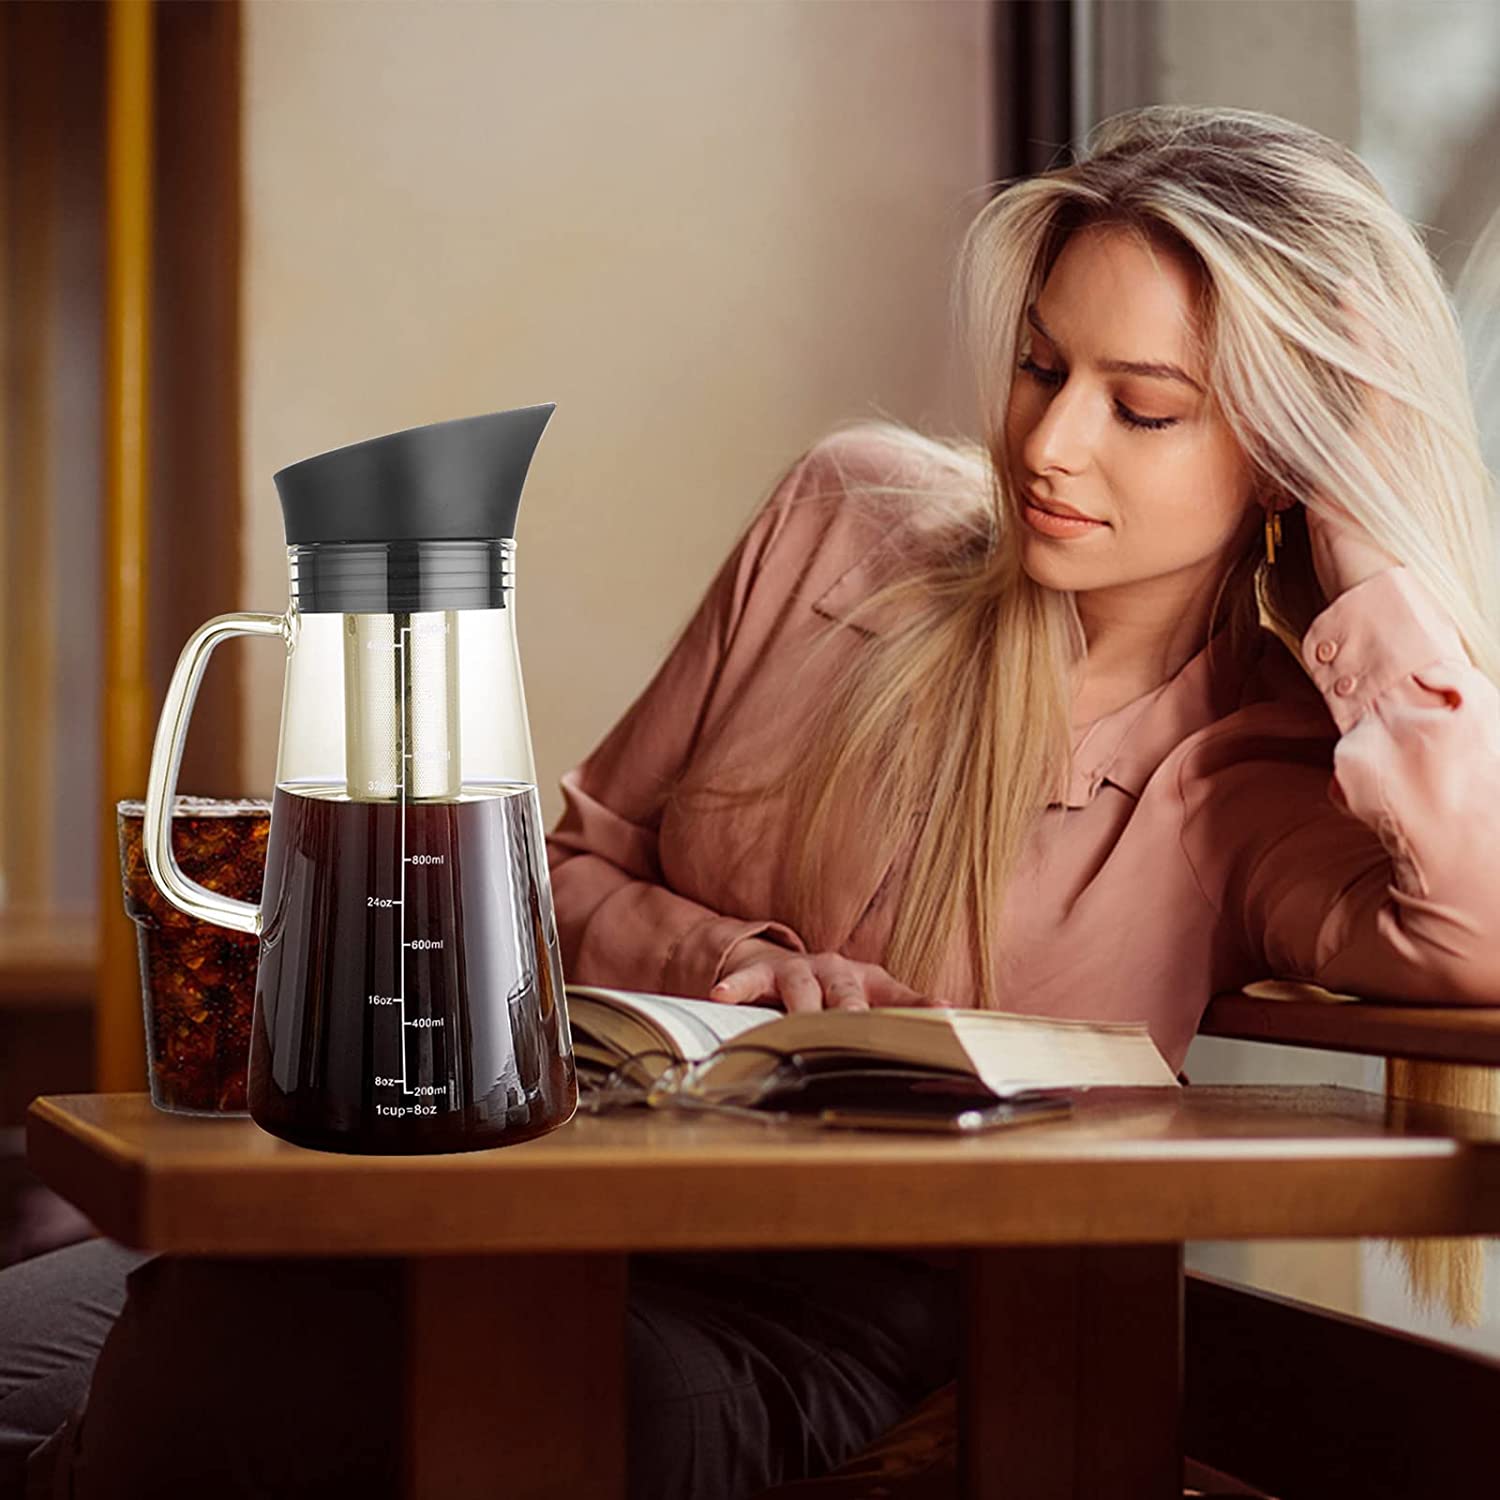 Oranlife Non-electric Coffee Percolators, Cold Brew Coffee Maker